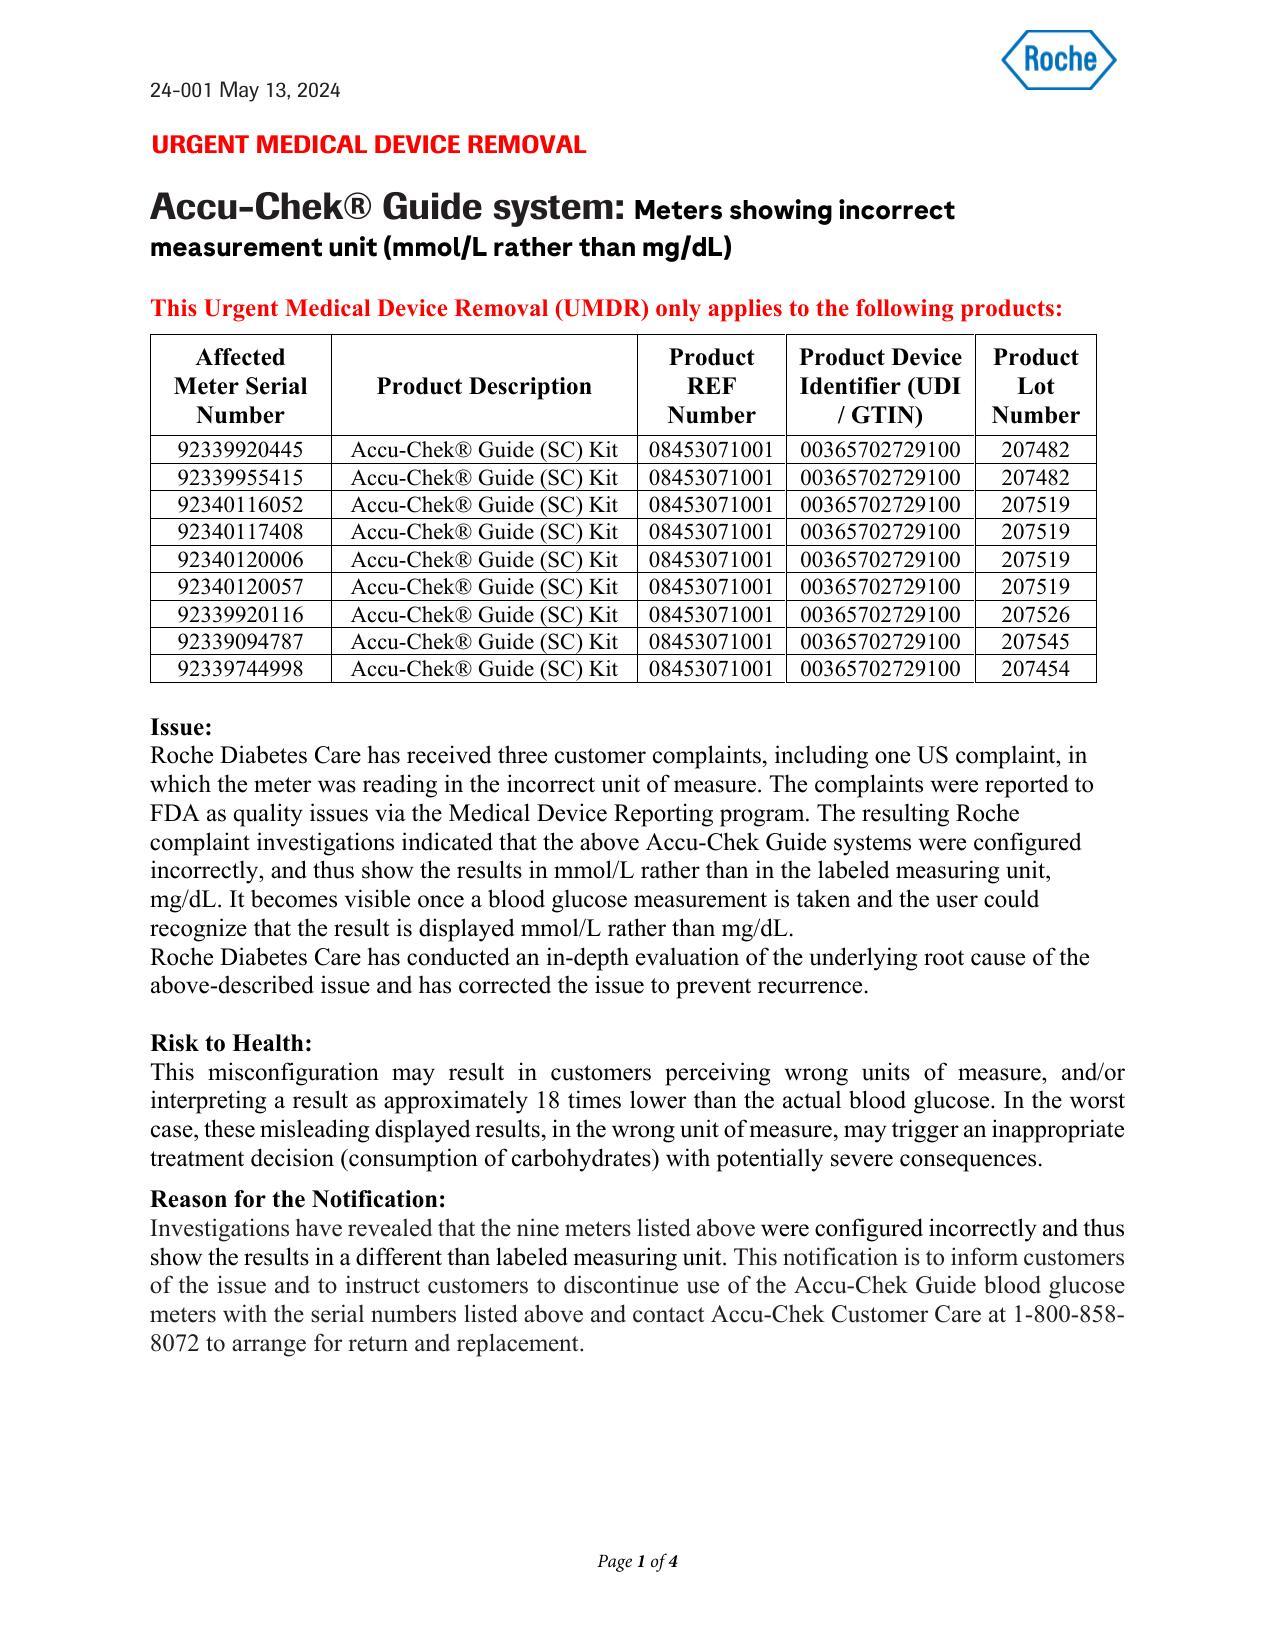 accu-chek-guide-system-user-manual.pdf